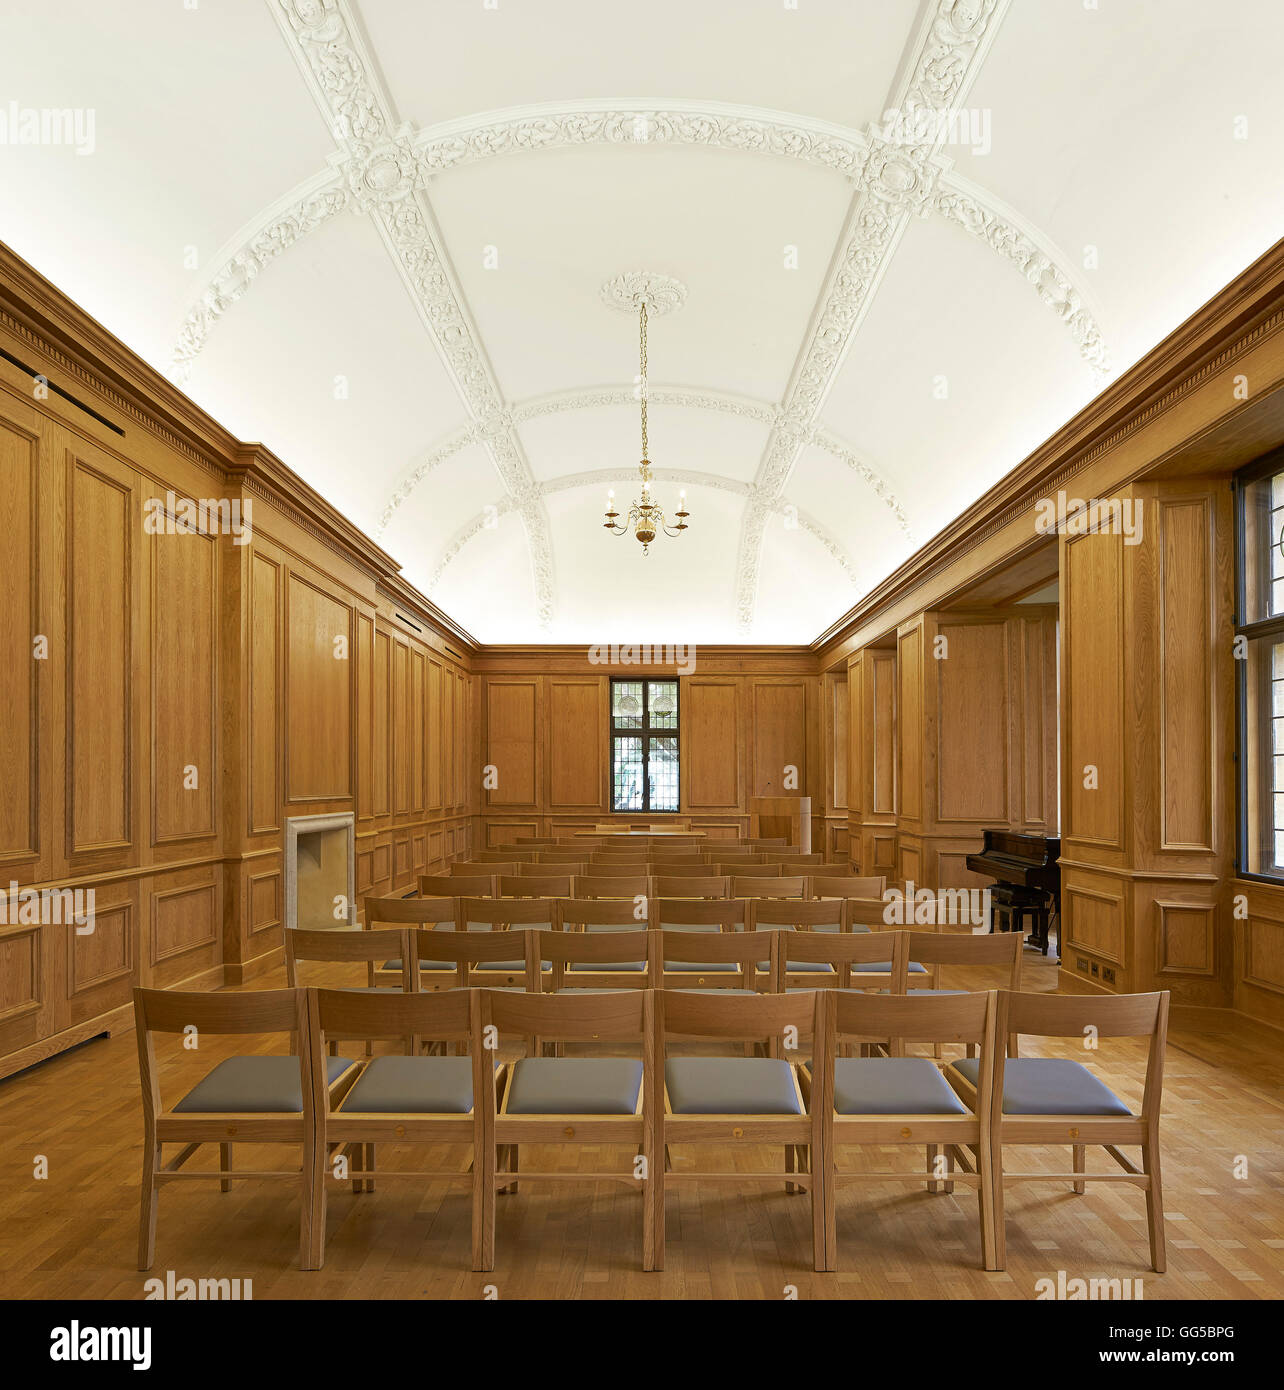 Rénovation intérieur de Oakeshott Prix. Le jardin des capacités au Lincoln College, Oxford, Royaume-Uni. Architecte : Stanton Williams, 2015. Banque D'Images